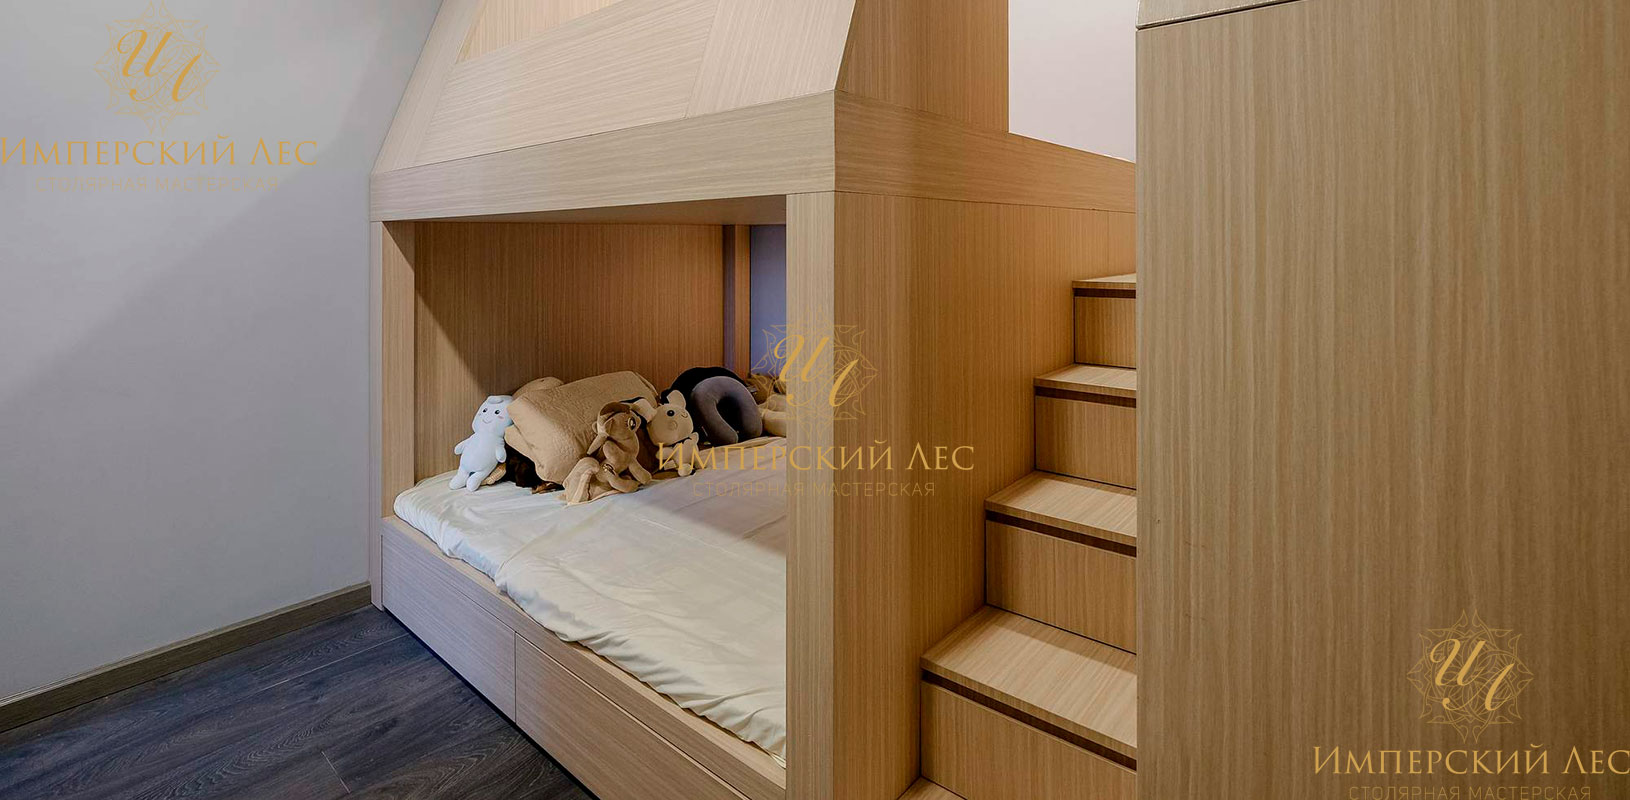 Детская кровать из натурального дерева с встроенными шкафами